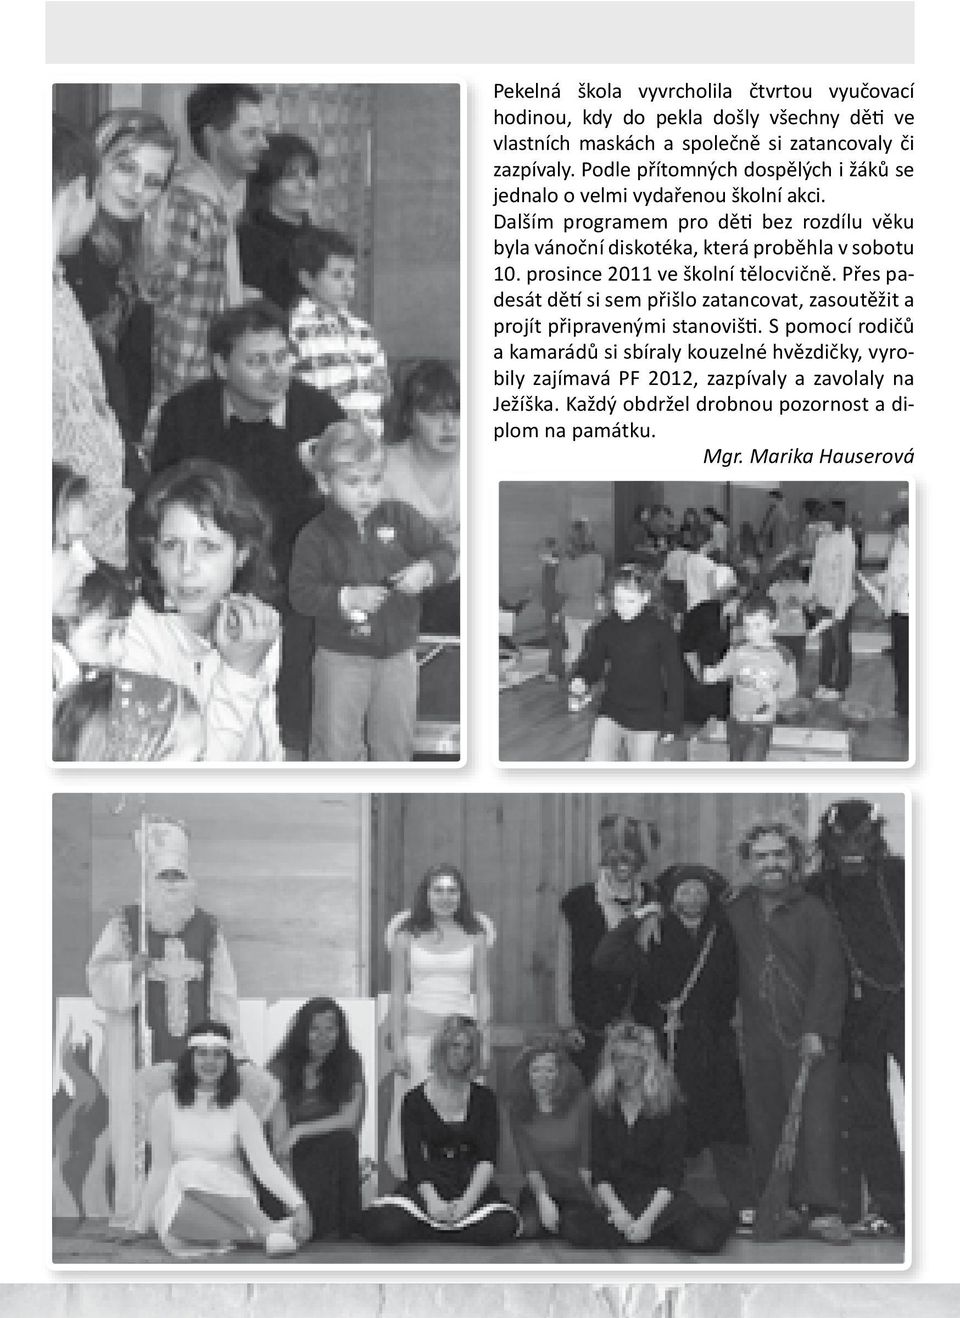 Dalším programem pro děti bez rozdílu věku byla vánoční diskotéka, která proběhla v sobotu 10. prosince 2011 ve školní tělocvičně.